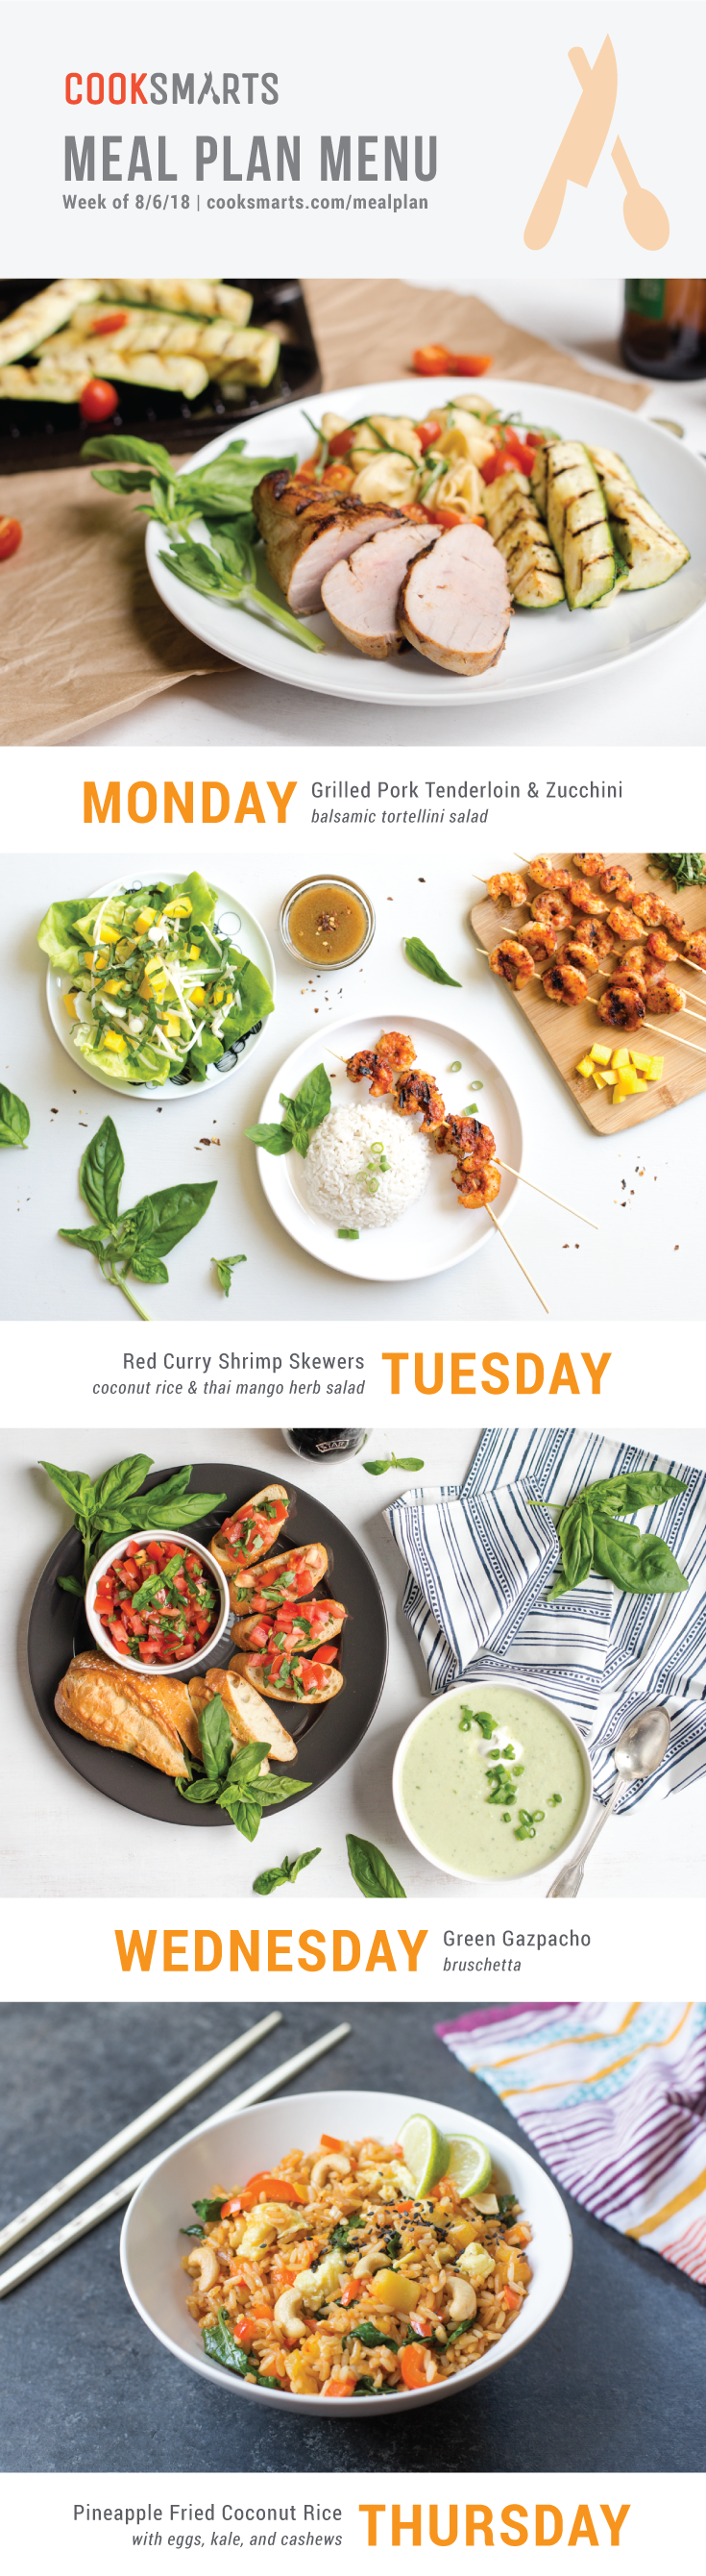 Weekly Meal Planner | Menu for Week of 8/6/18 via Cook Smarts